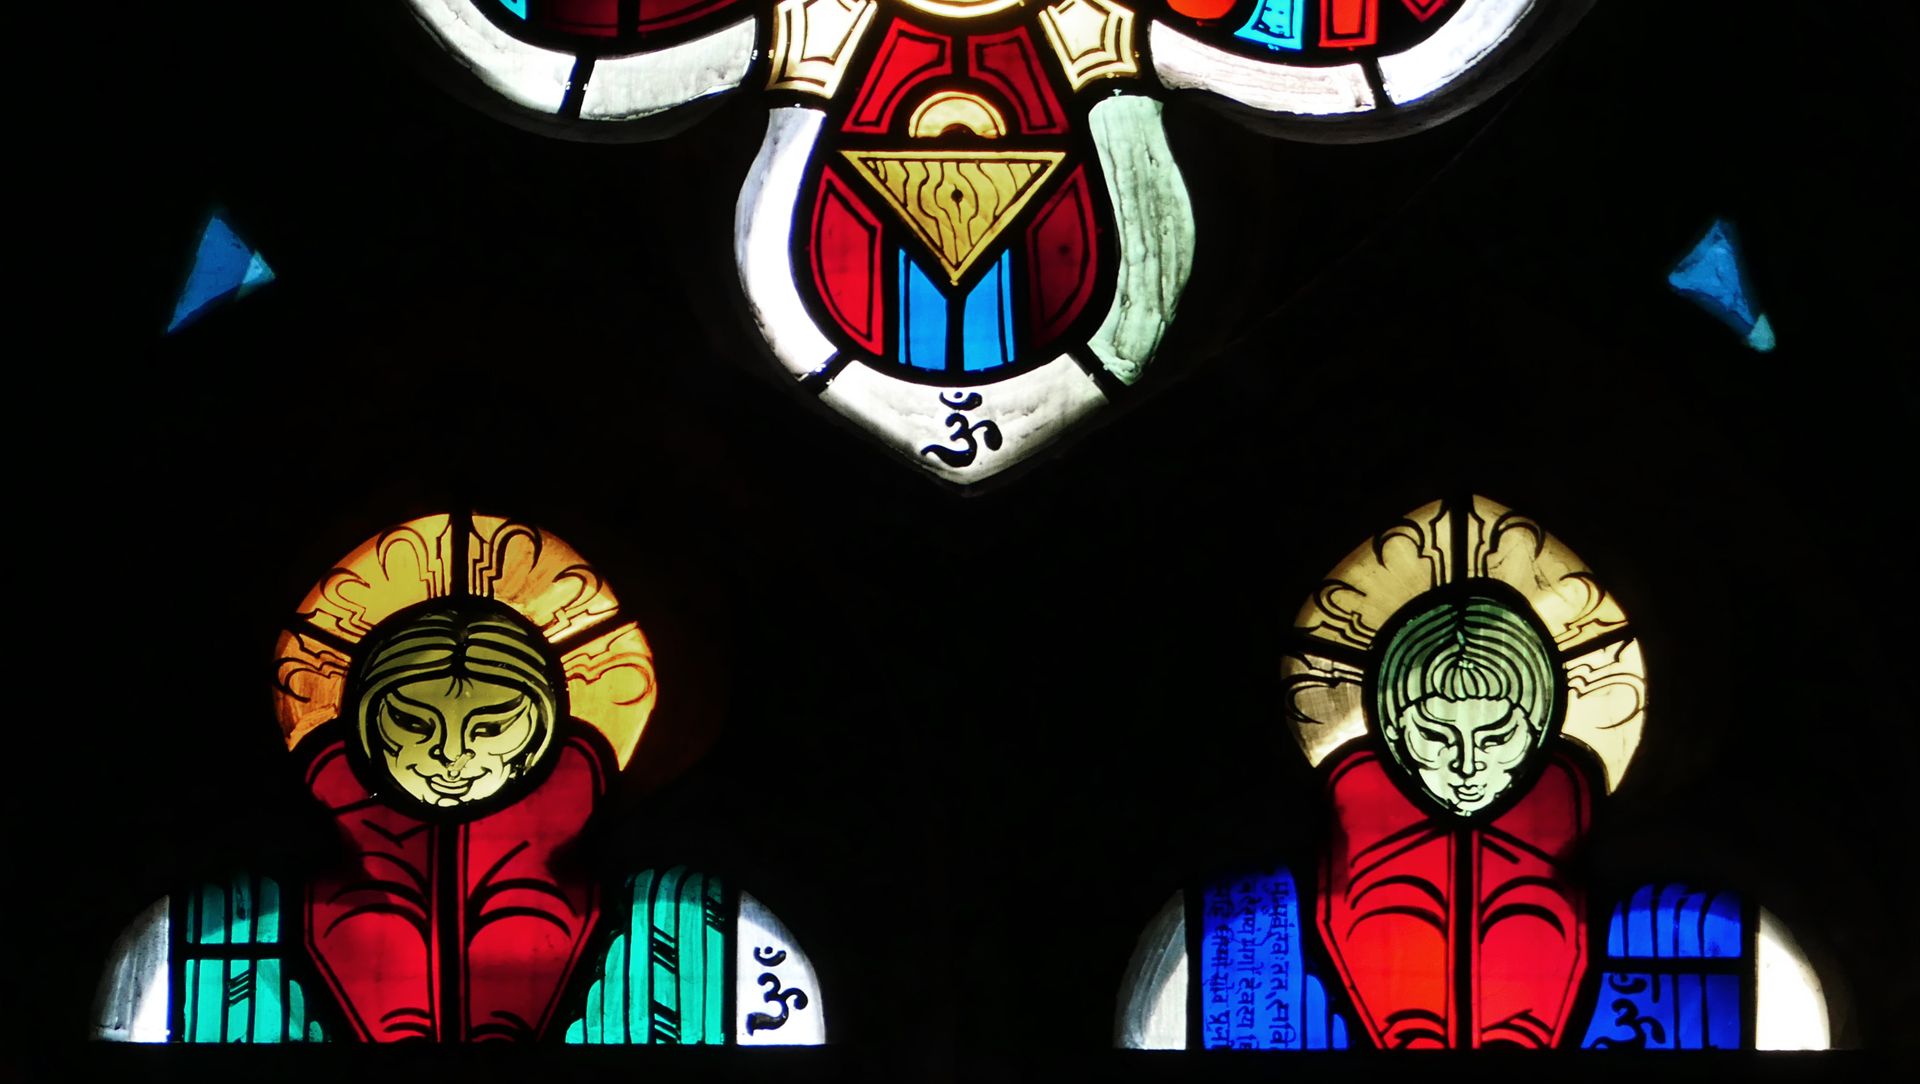 Evangelistenfenster / Lucas unterer Vierpass (hier in der Mitte das "Om" Zeichen des Künstlers) und Lanzettspitzen